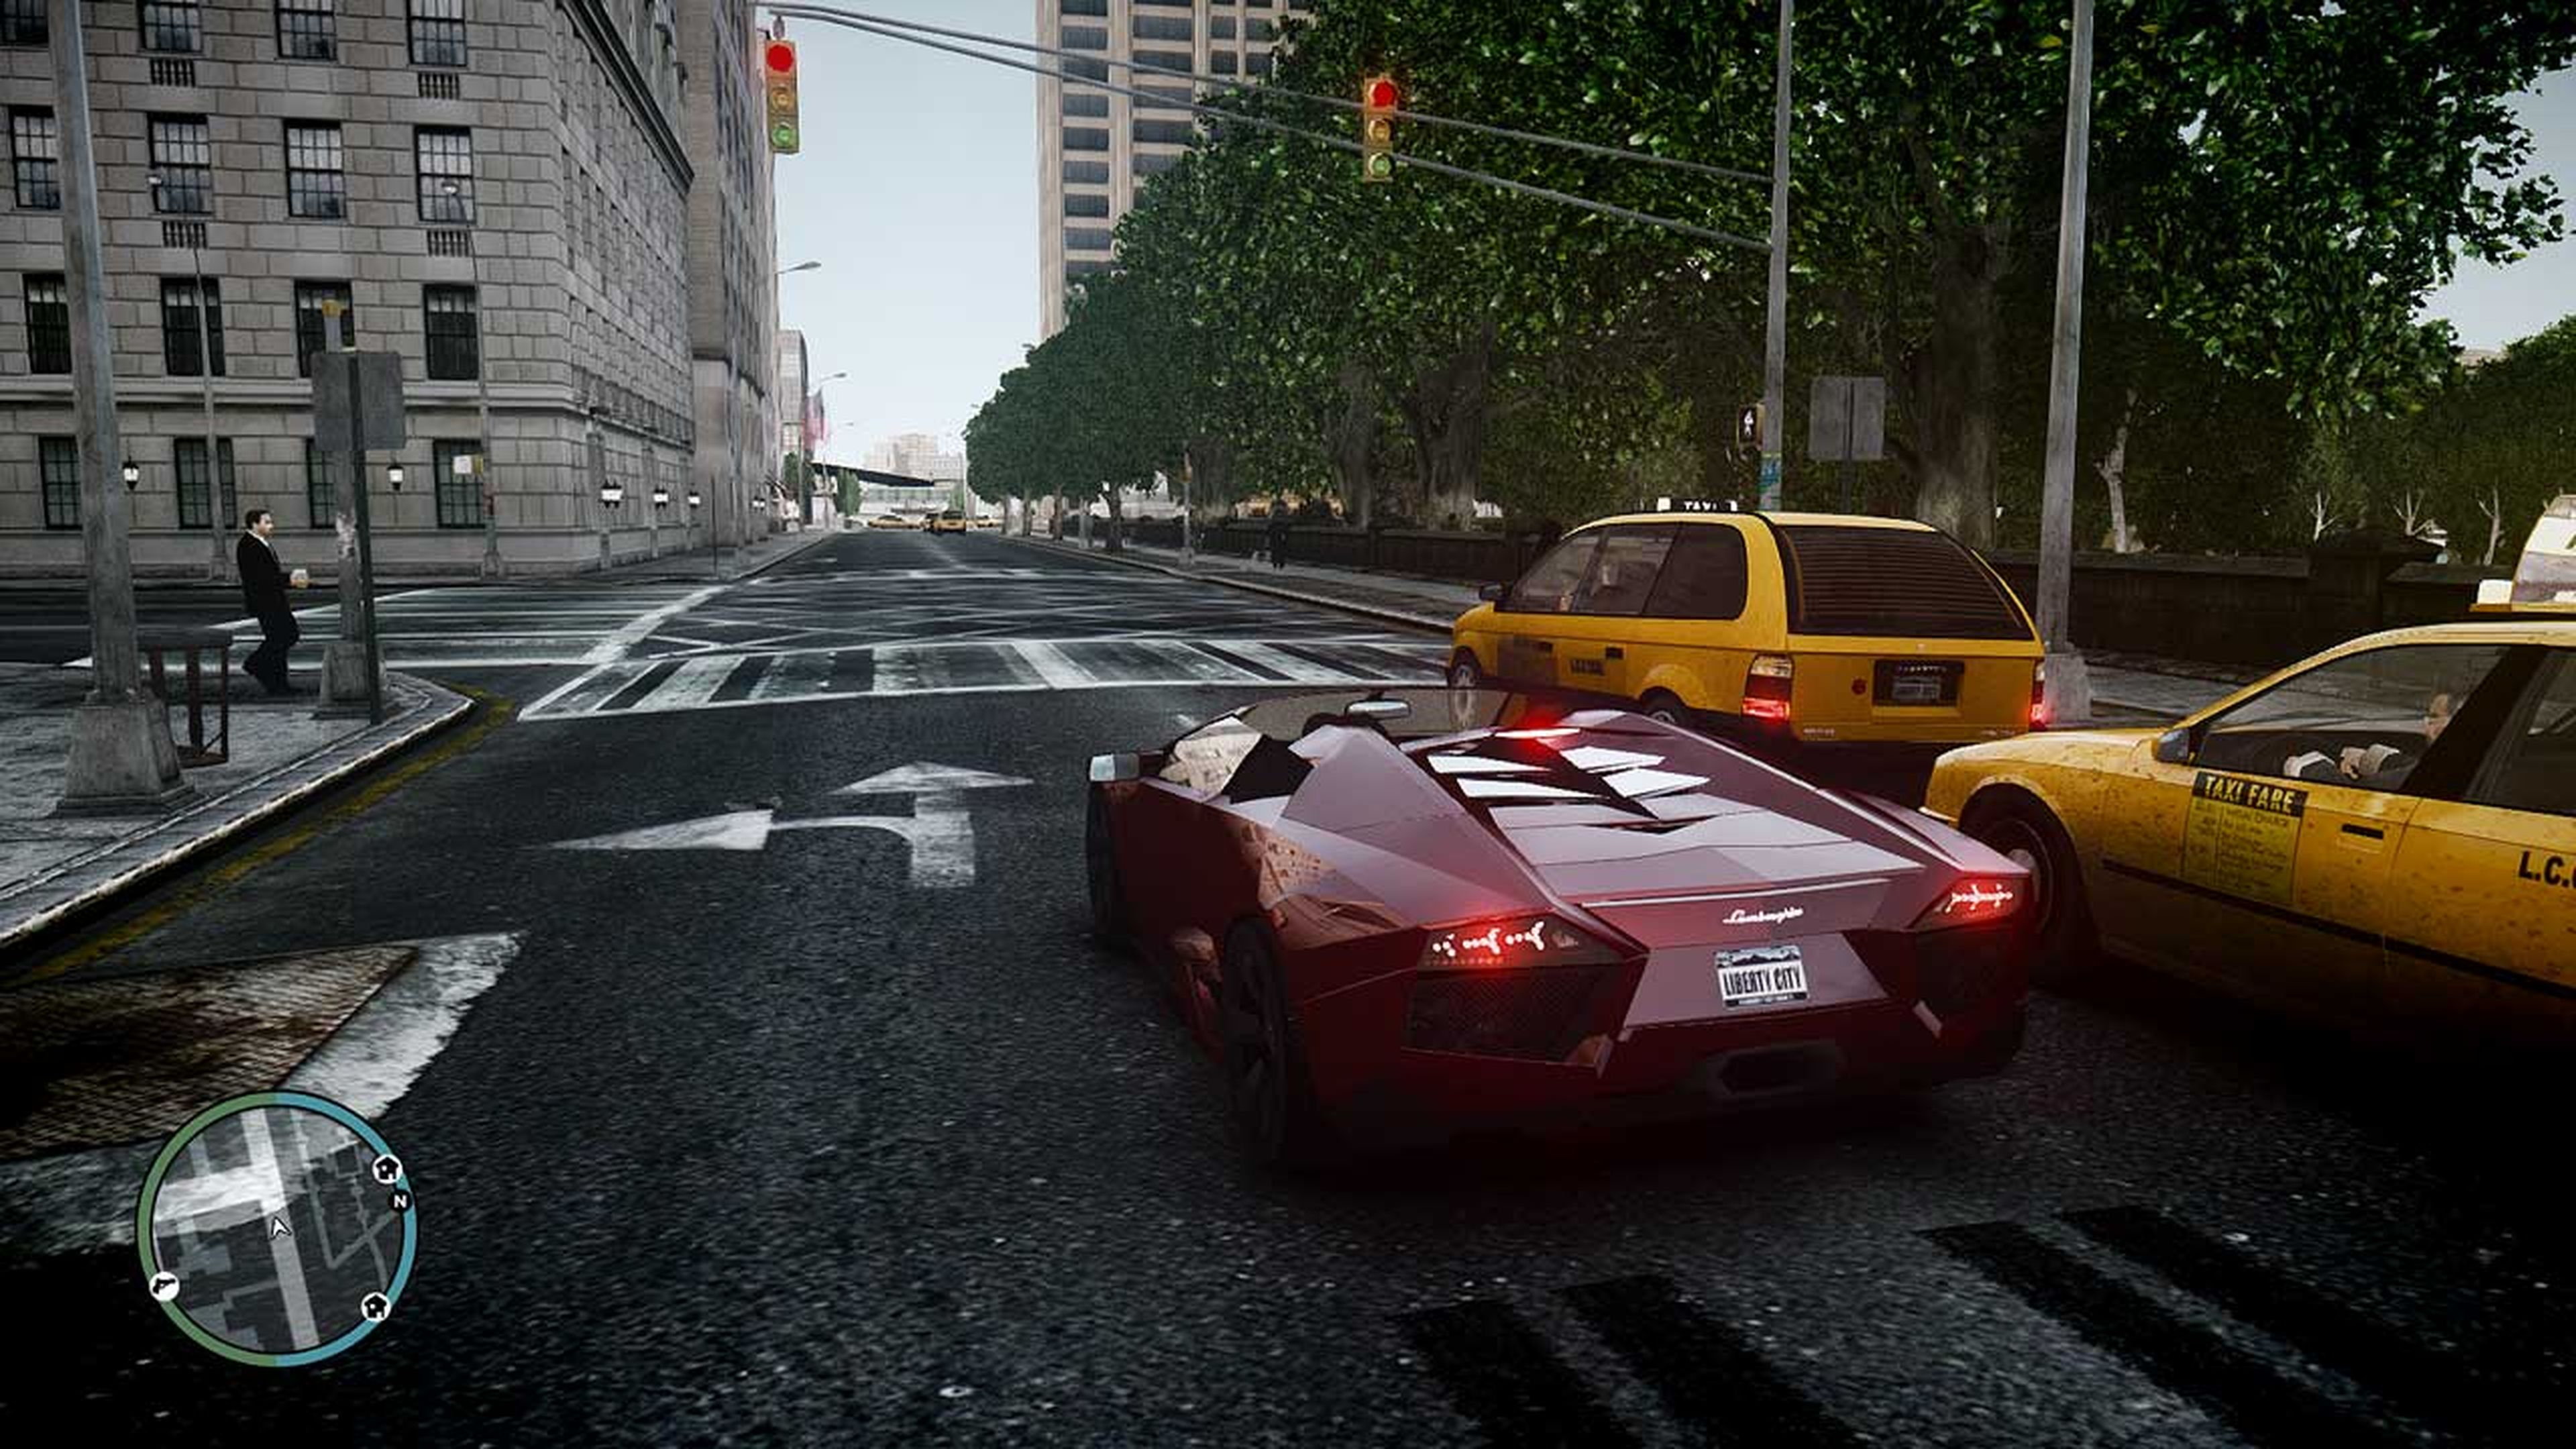 Todos los trucos y claves de Grand Theft Auto IV (GTA 4) para PC